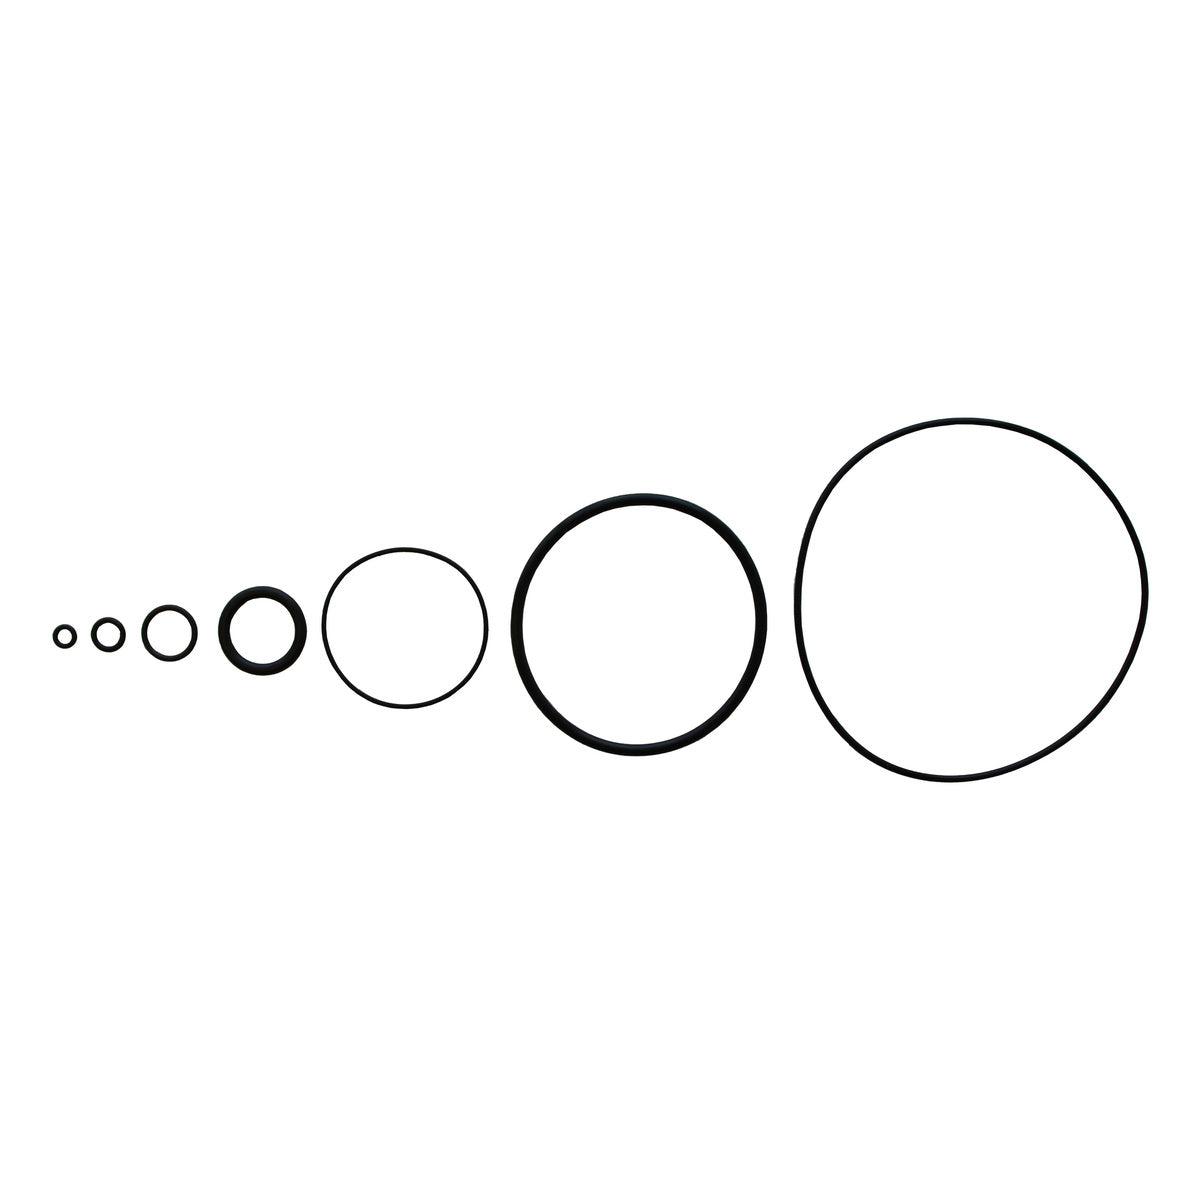 O-Ring, 101.19 x 3.53 mm - Viton, 08514704V